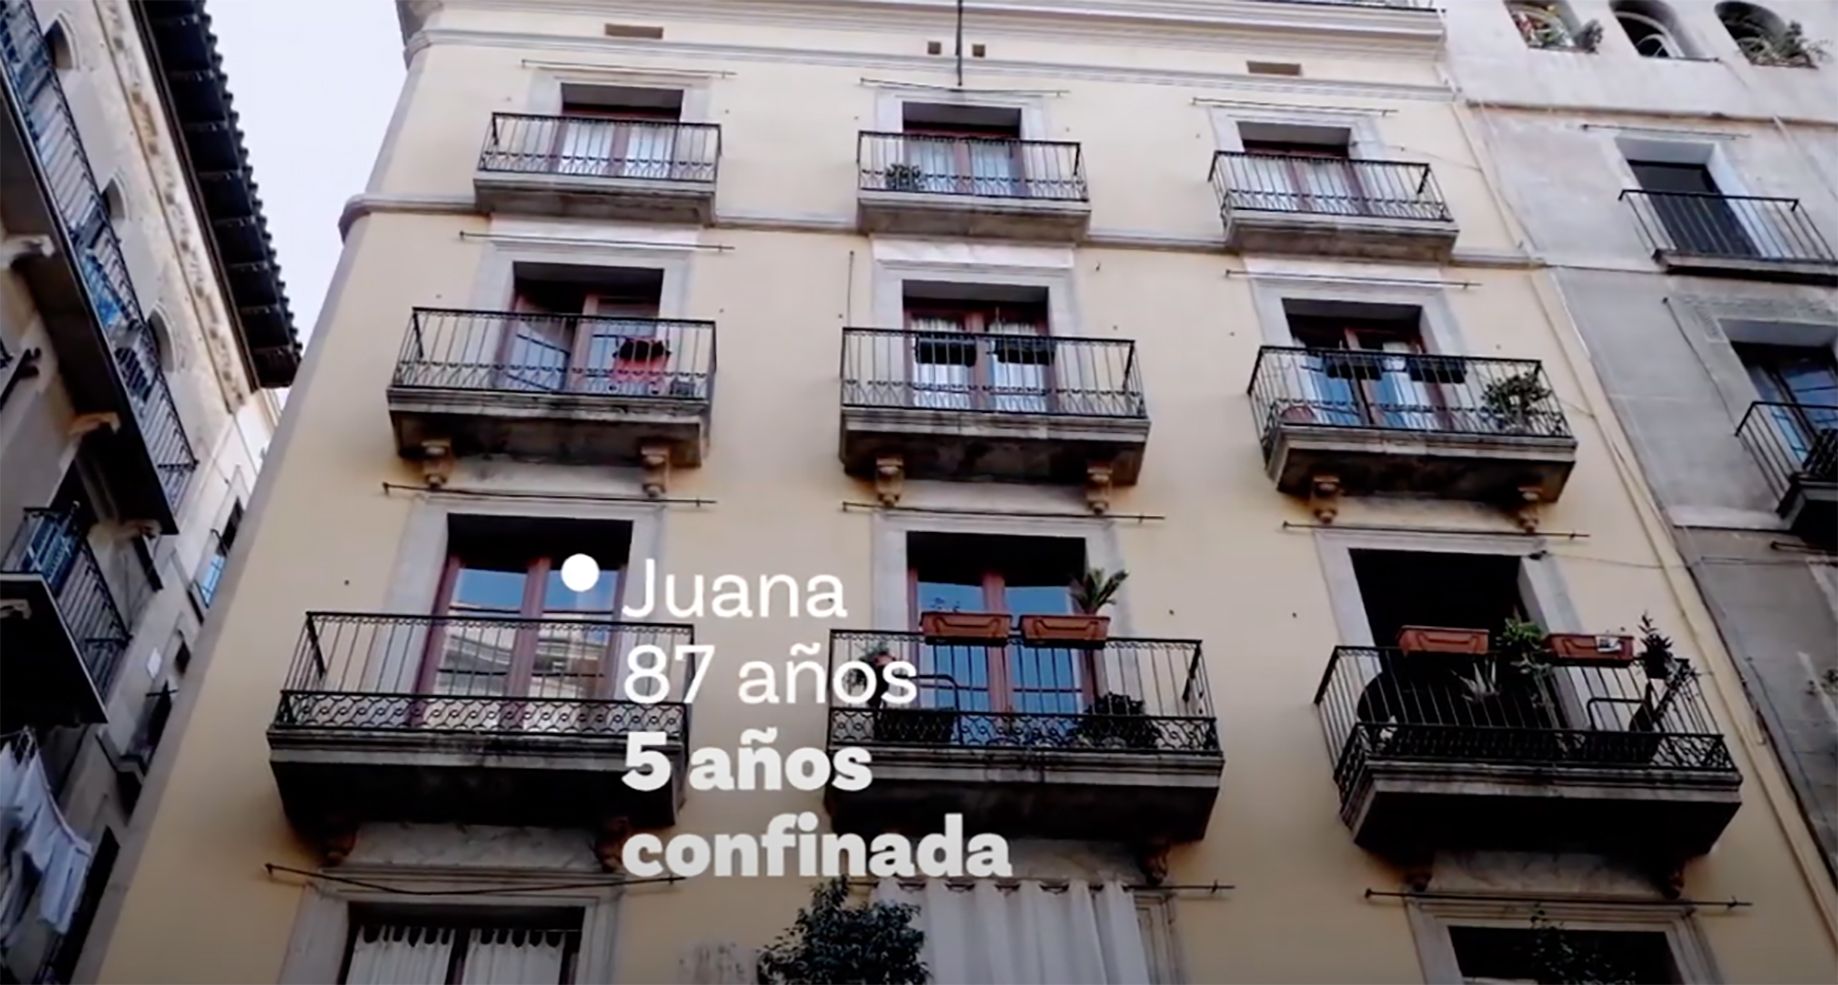 "Juana, 87 años y cinco confinada": la emotiva campaña que combate la soledad no deseada